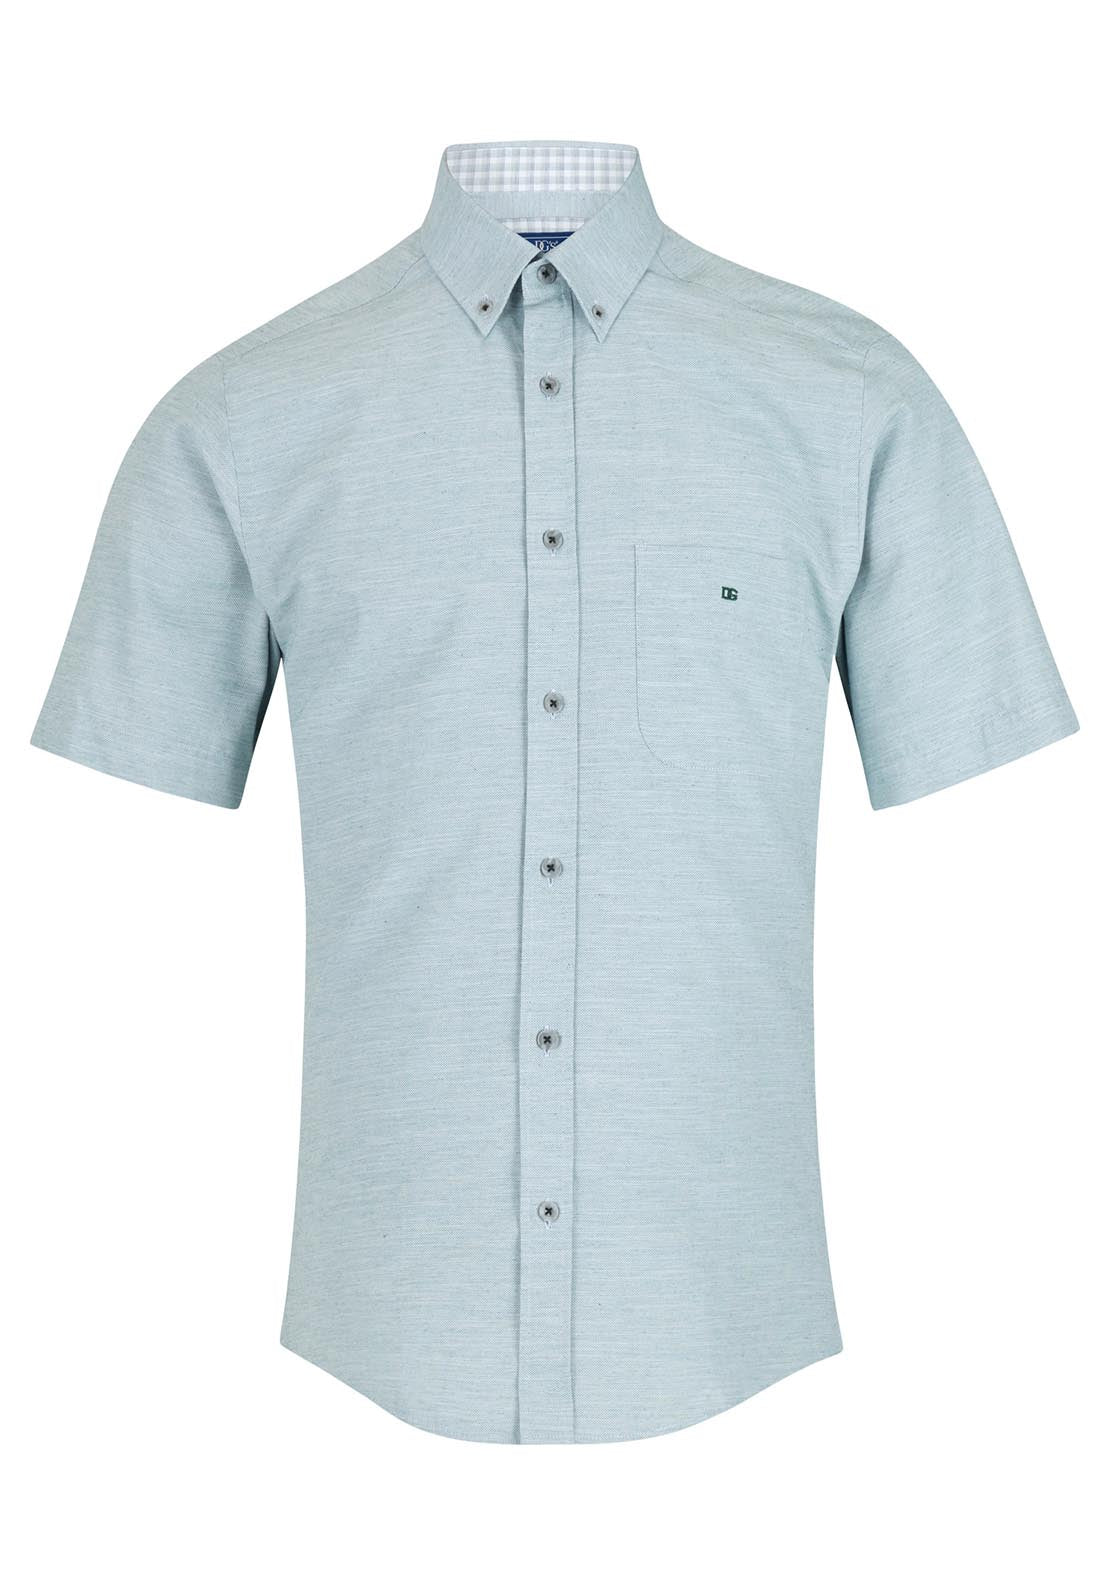 Drifter Short Sleeve Plain Shirt 1 Shaws Department Stores